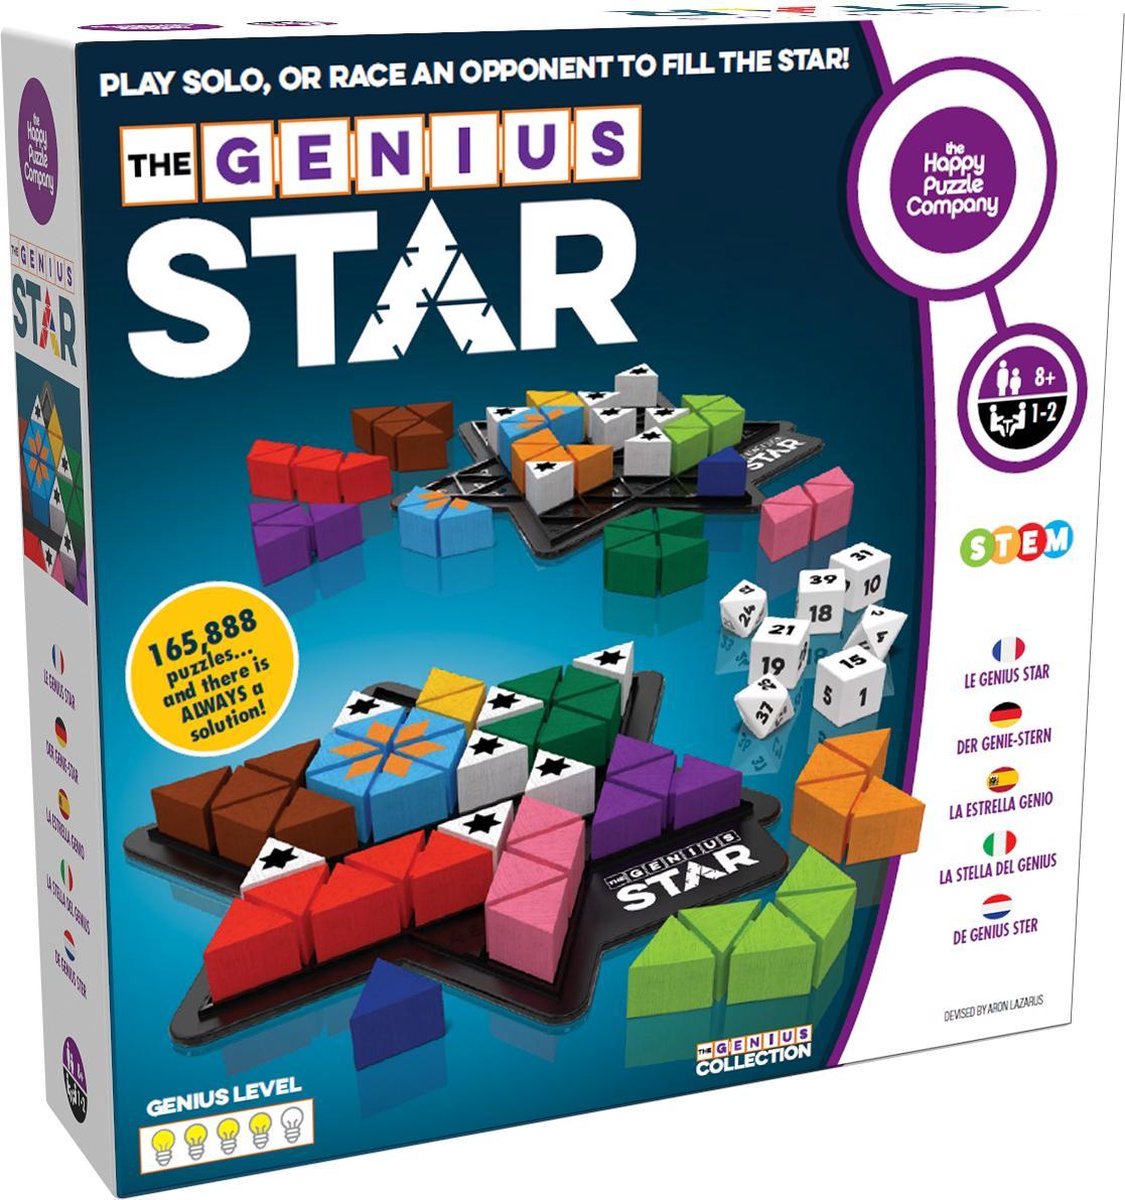 Genius Square - SmartGames